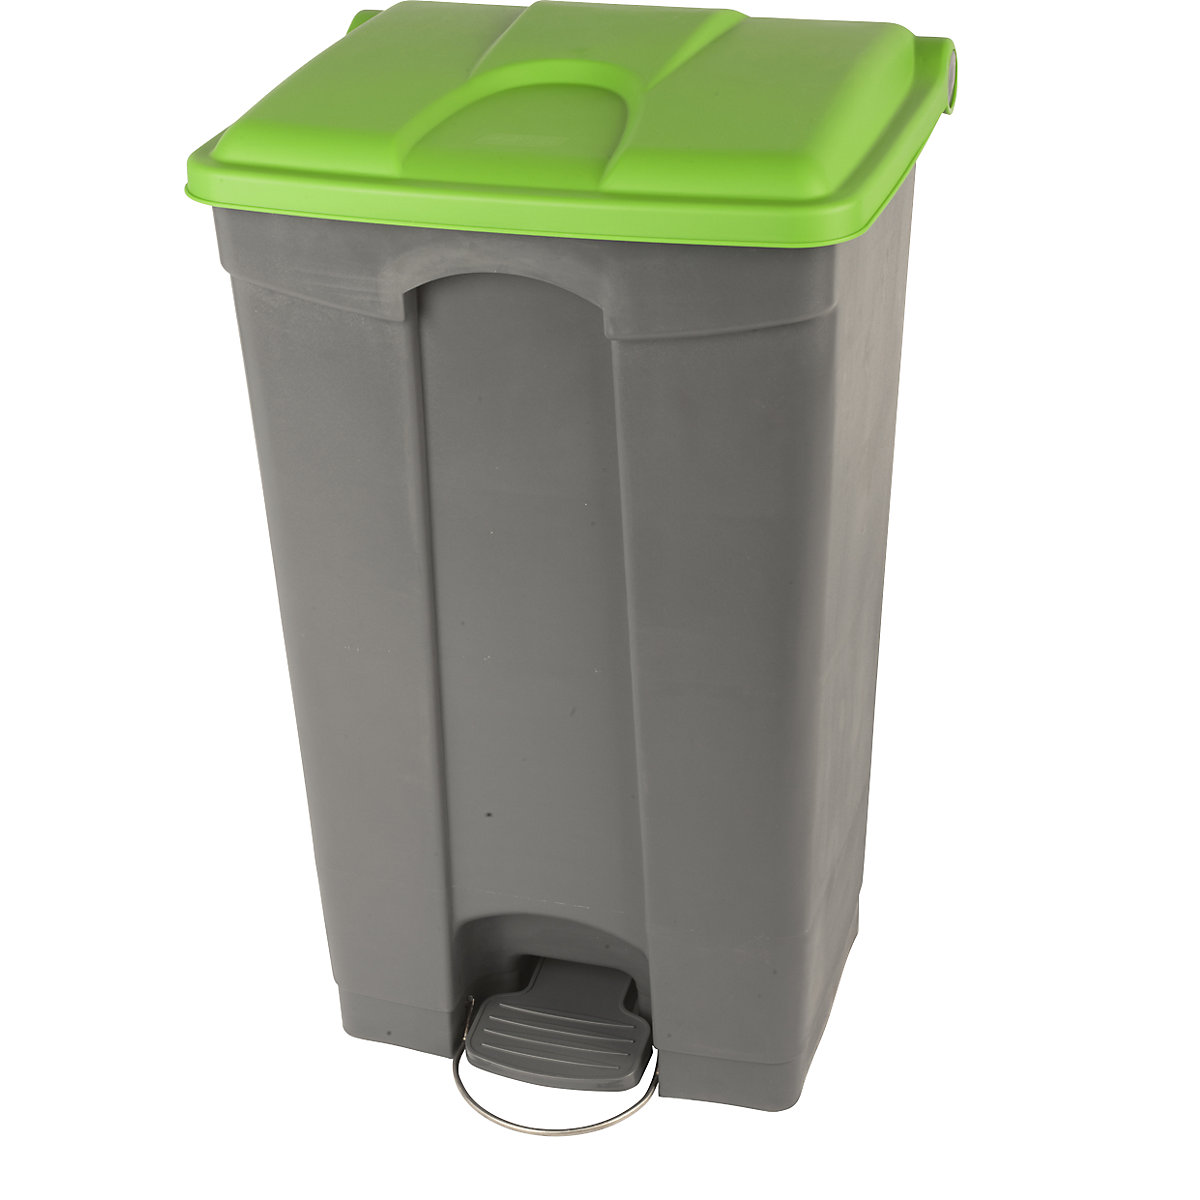 Afvalverzamelaar met pedaal, inhoud 90 l, b x h x d = 505 x 790 x 410 mm, grijs, deksel groen